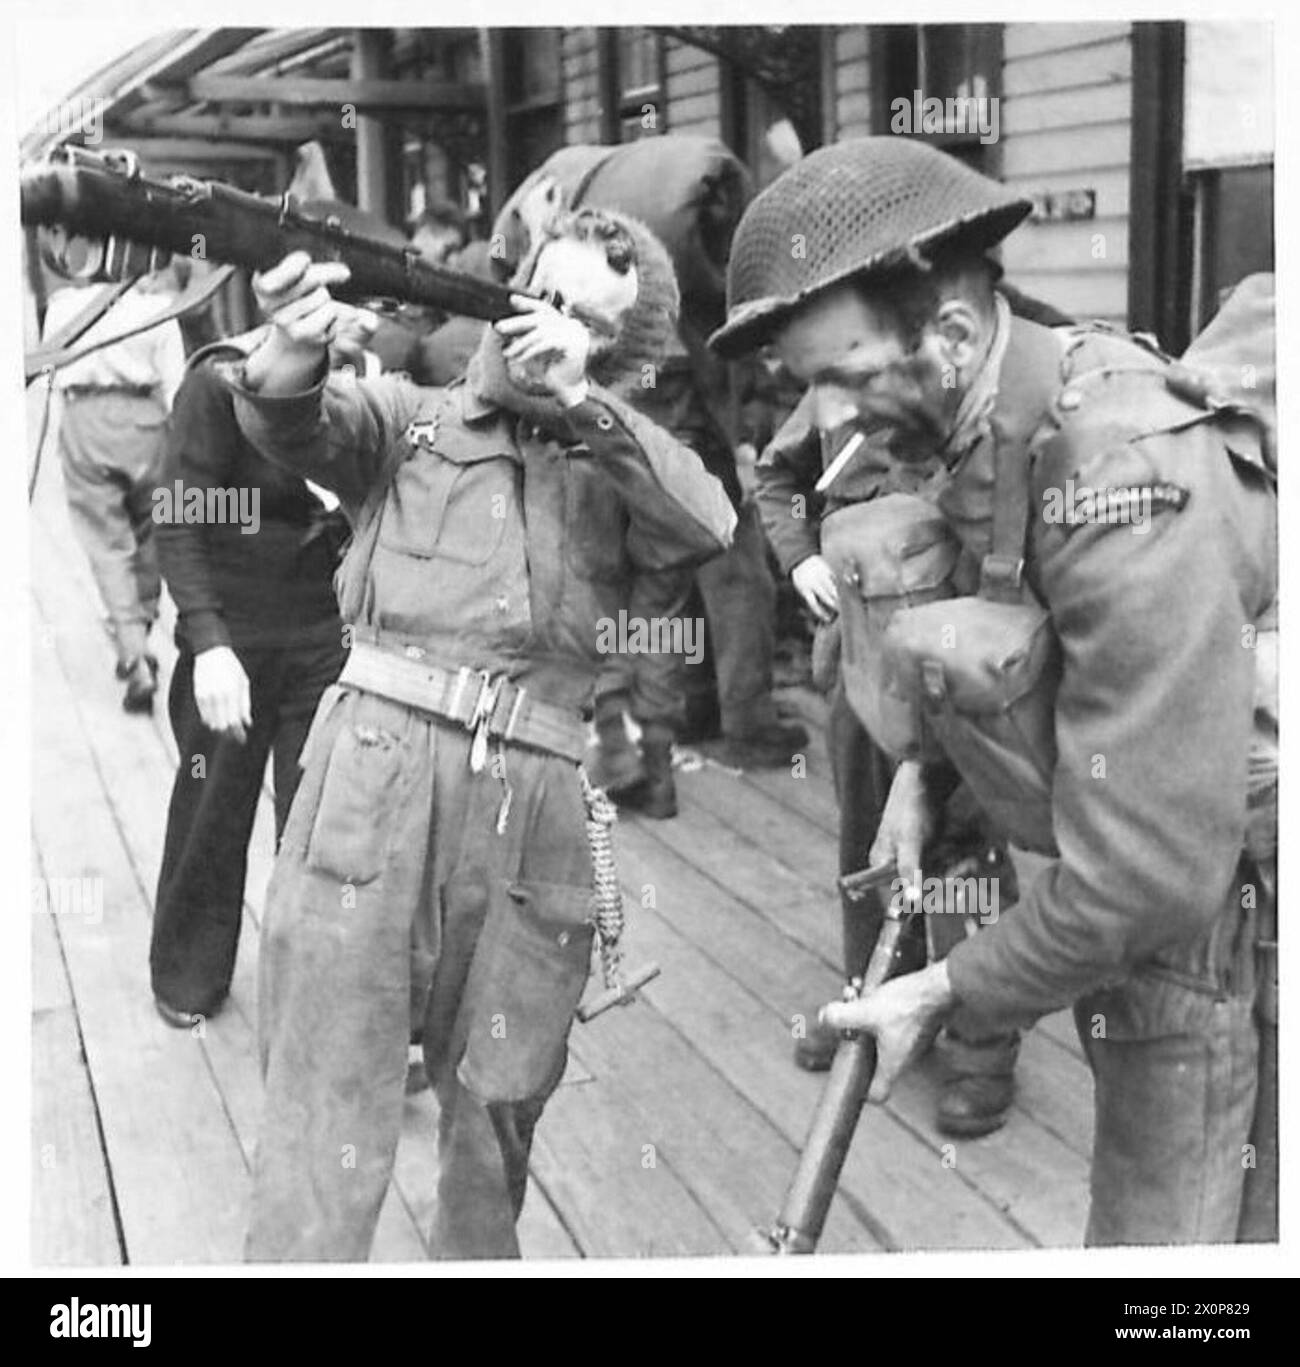 ARRIVO DA DIEPPE - questi uomini guardano i loro fucili e le loro attrezzature all'arrivo a Newhaven. Negativo fotografico, British Army Foto Stock